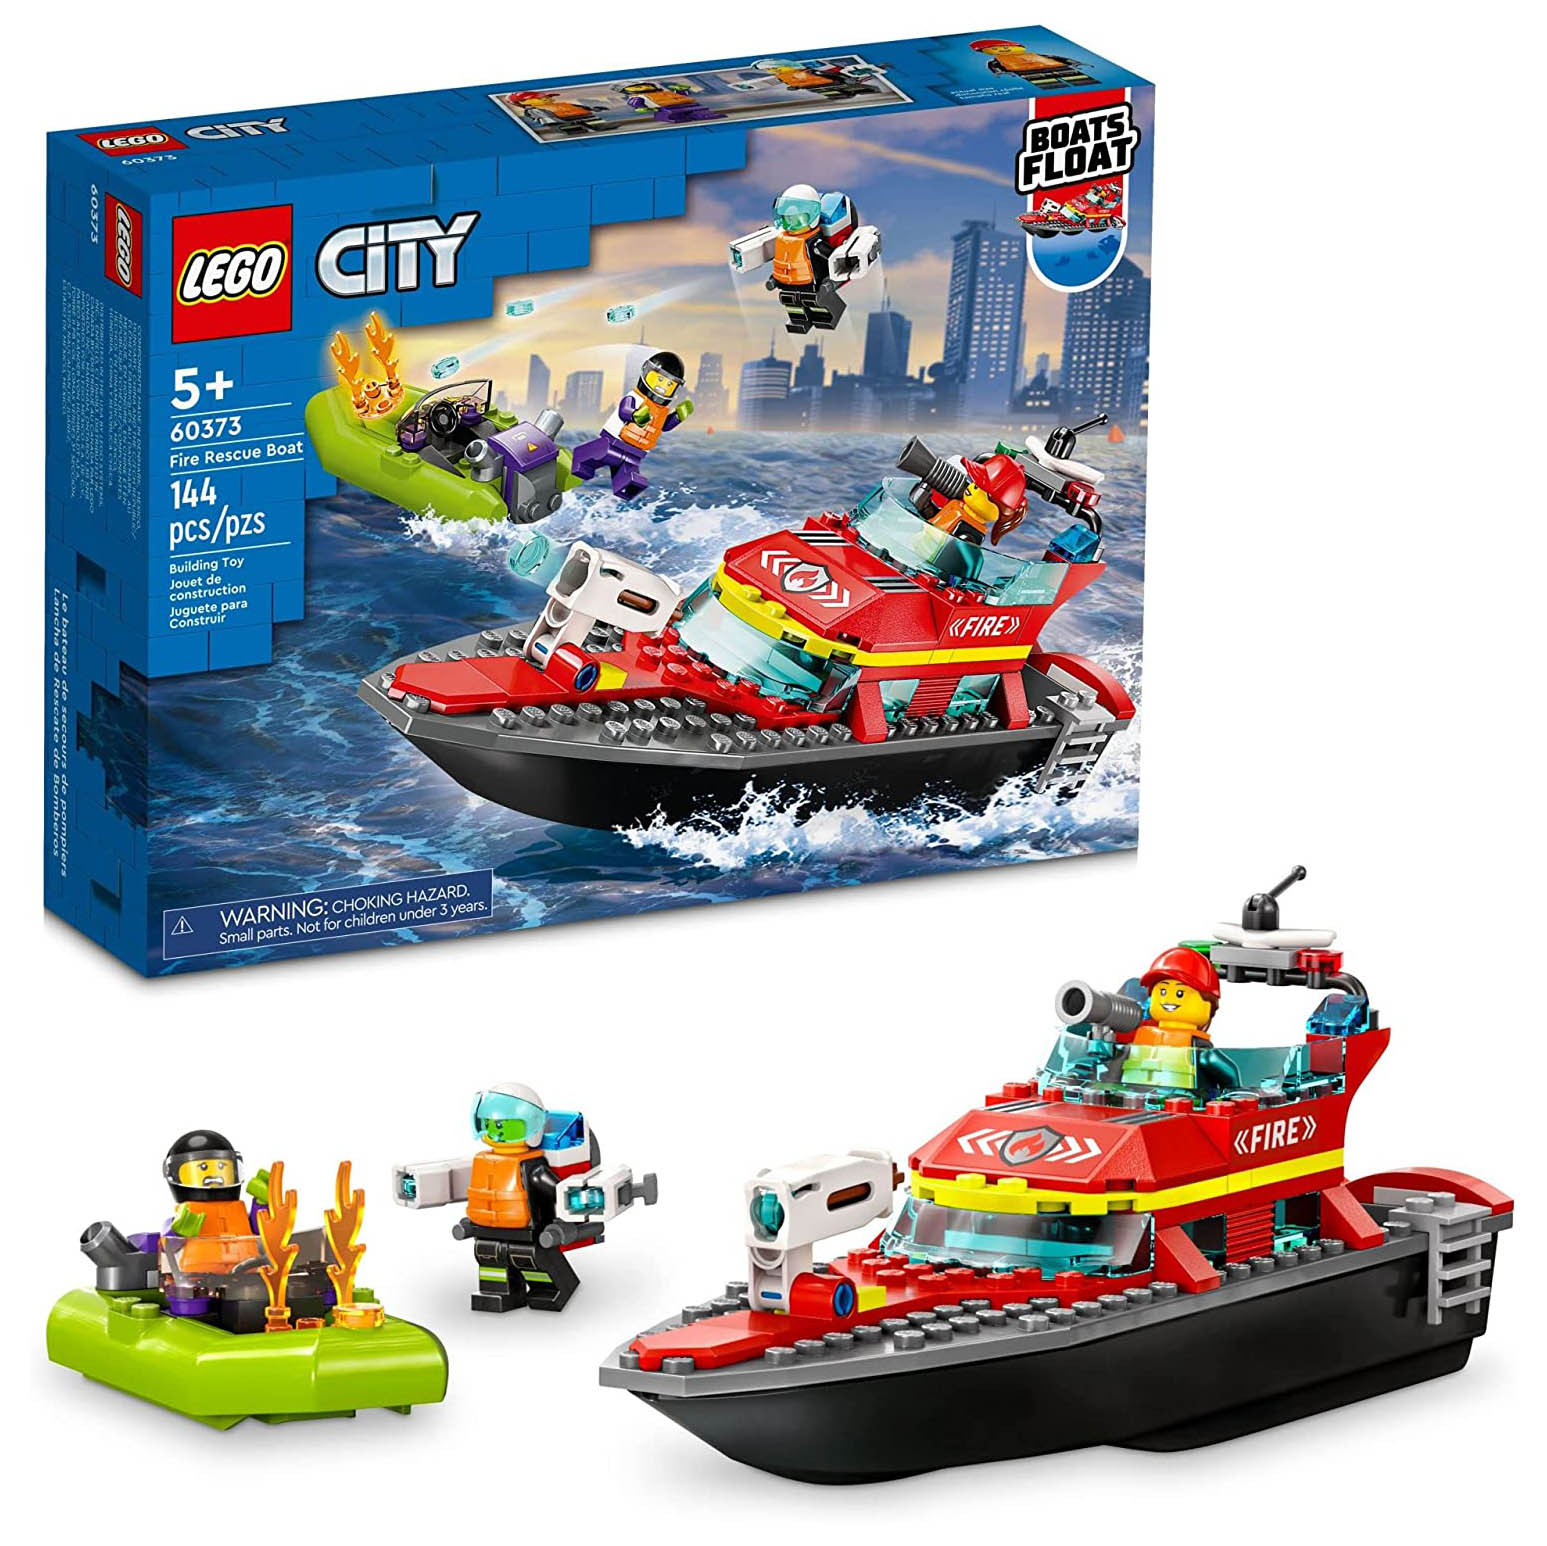 Конструктор LEGO City Пожарная спасательная лодка, 144 детали, 60373 конструктор lego city 60216 центральная пожарная станция